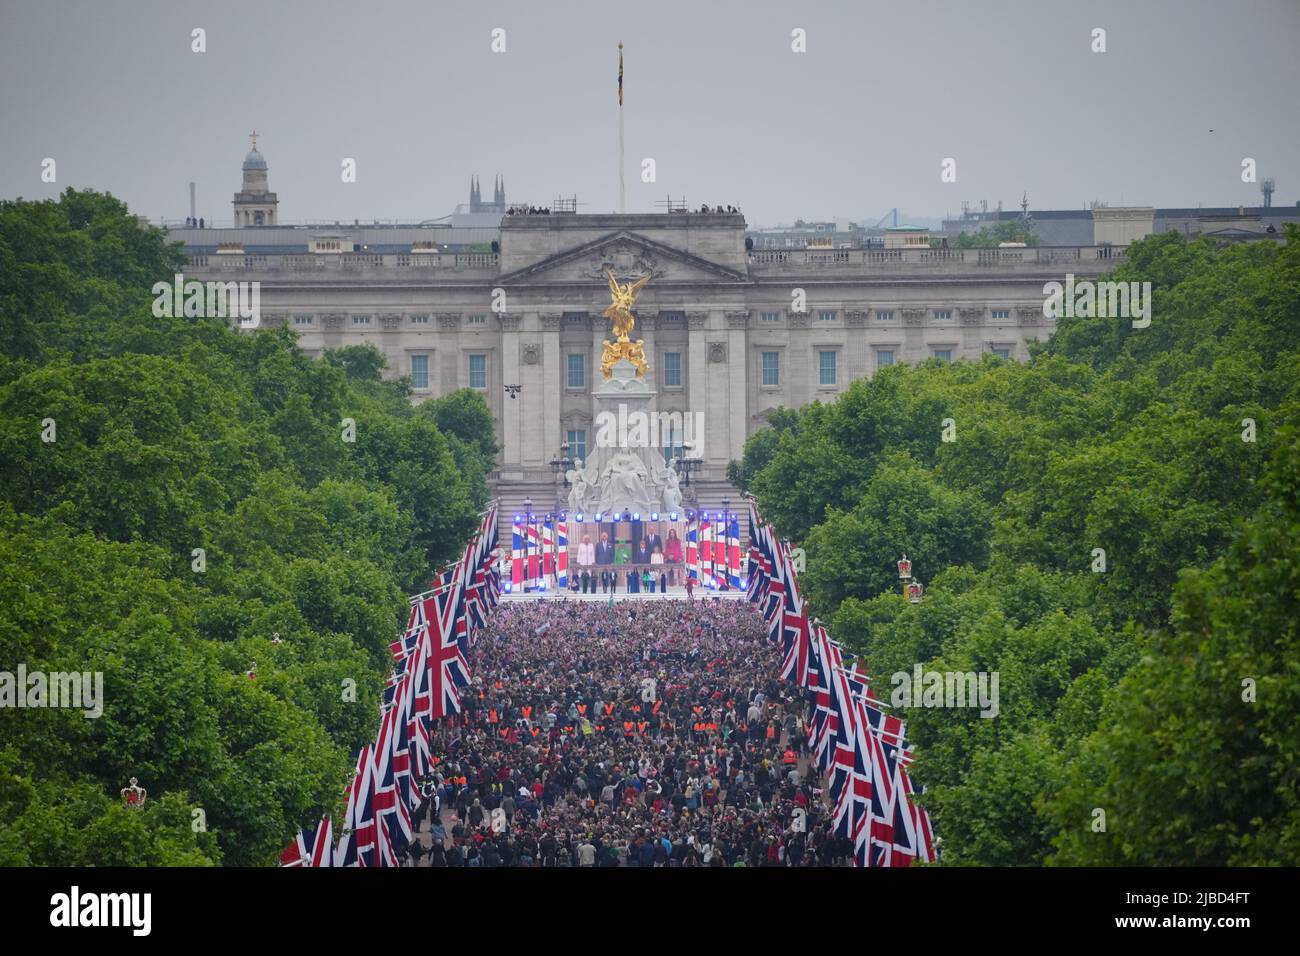 In der Mall werden Menschenmengen gesehen, wobei Königin Elizabeth II. Während des Singens der Nationalhymne auf der Platinum Jubilee Pageant vor dem Buckingham Palace, London, am vierten Tag der Platinum Jubilee-Feierlichkeiten, auf einer Leinwand gezeigt wird. Bilddatum: Sonntag, 5. Juni 2022. Stockfoto